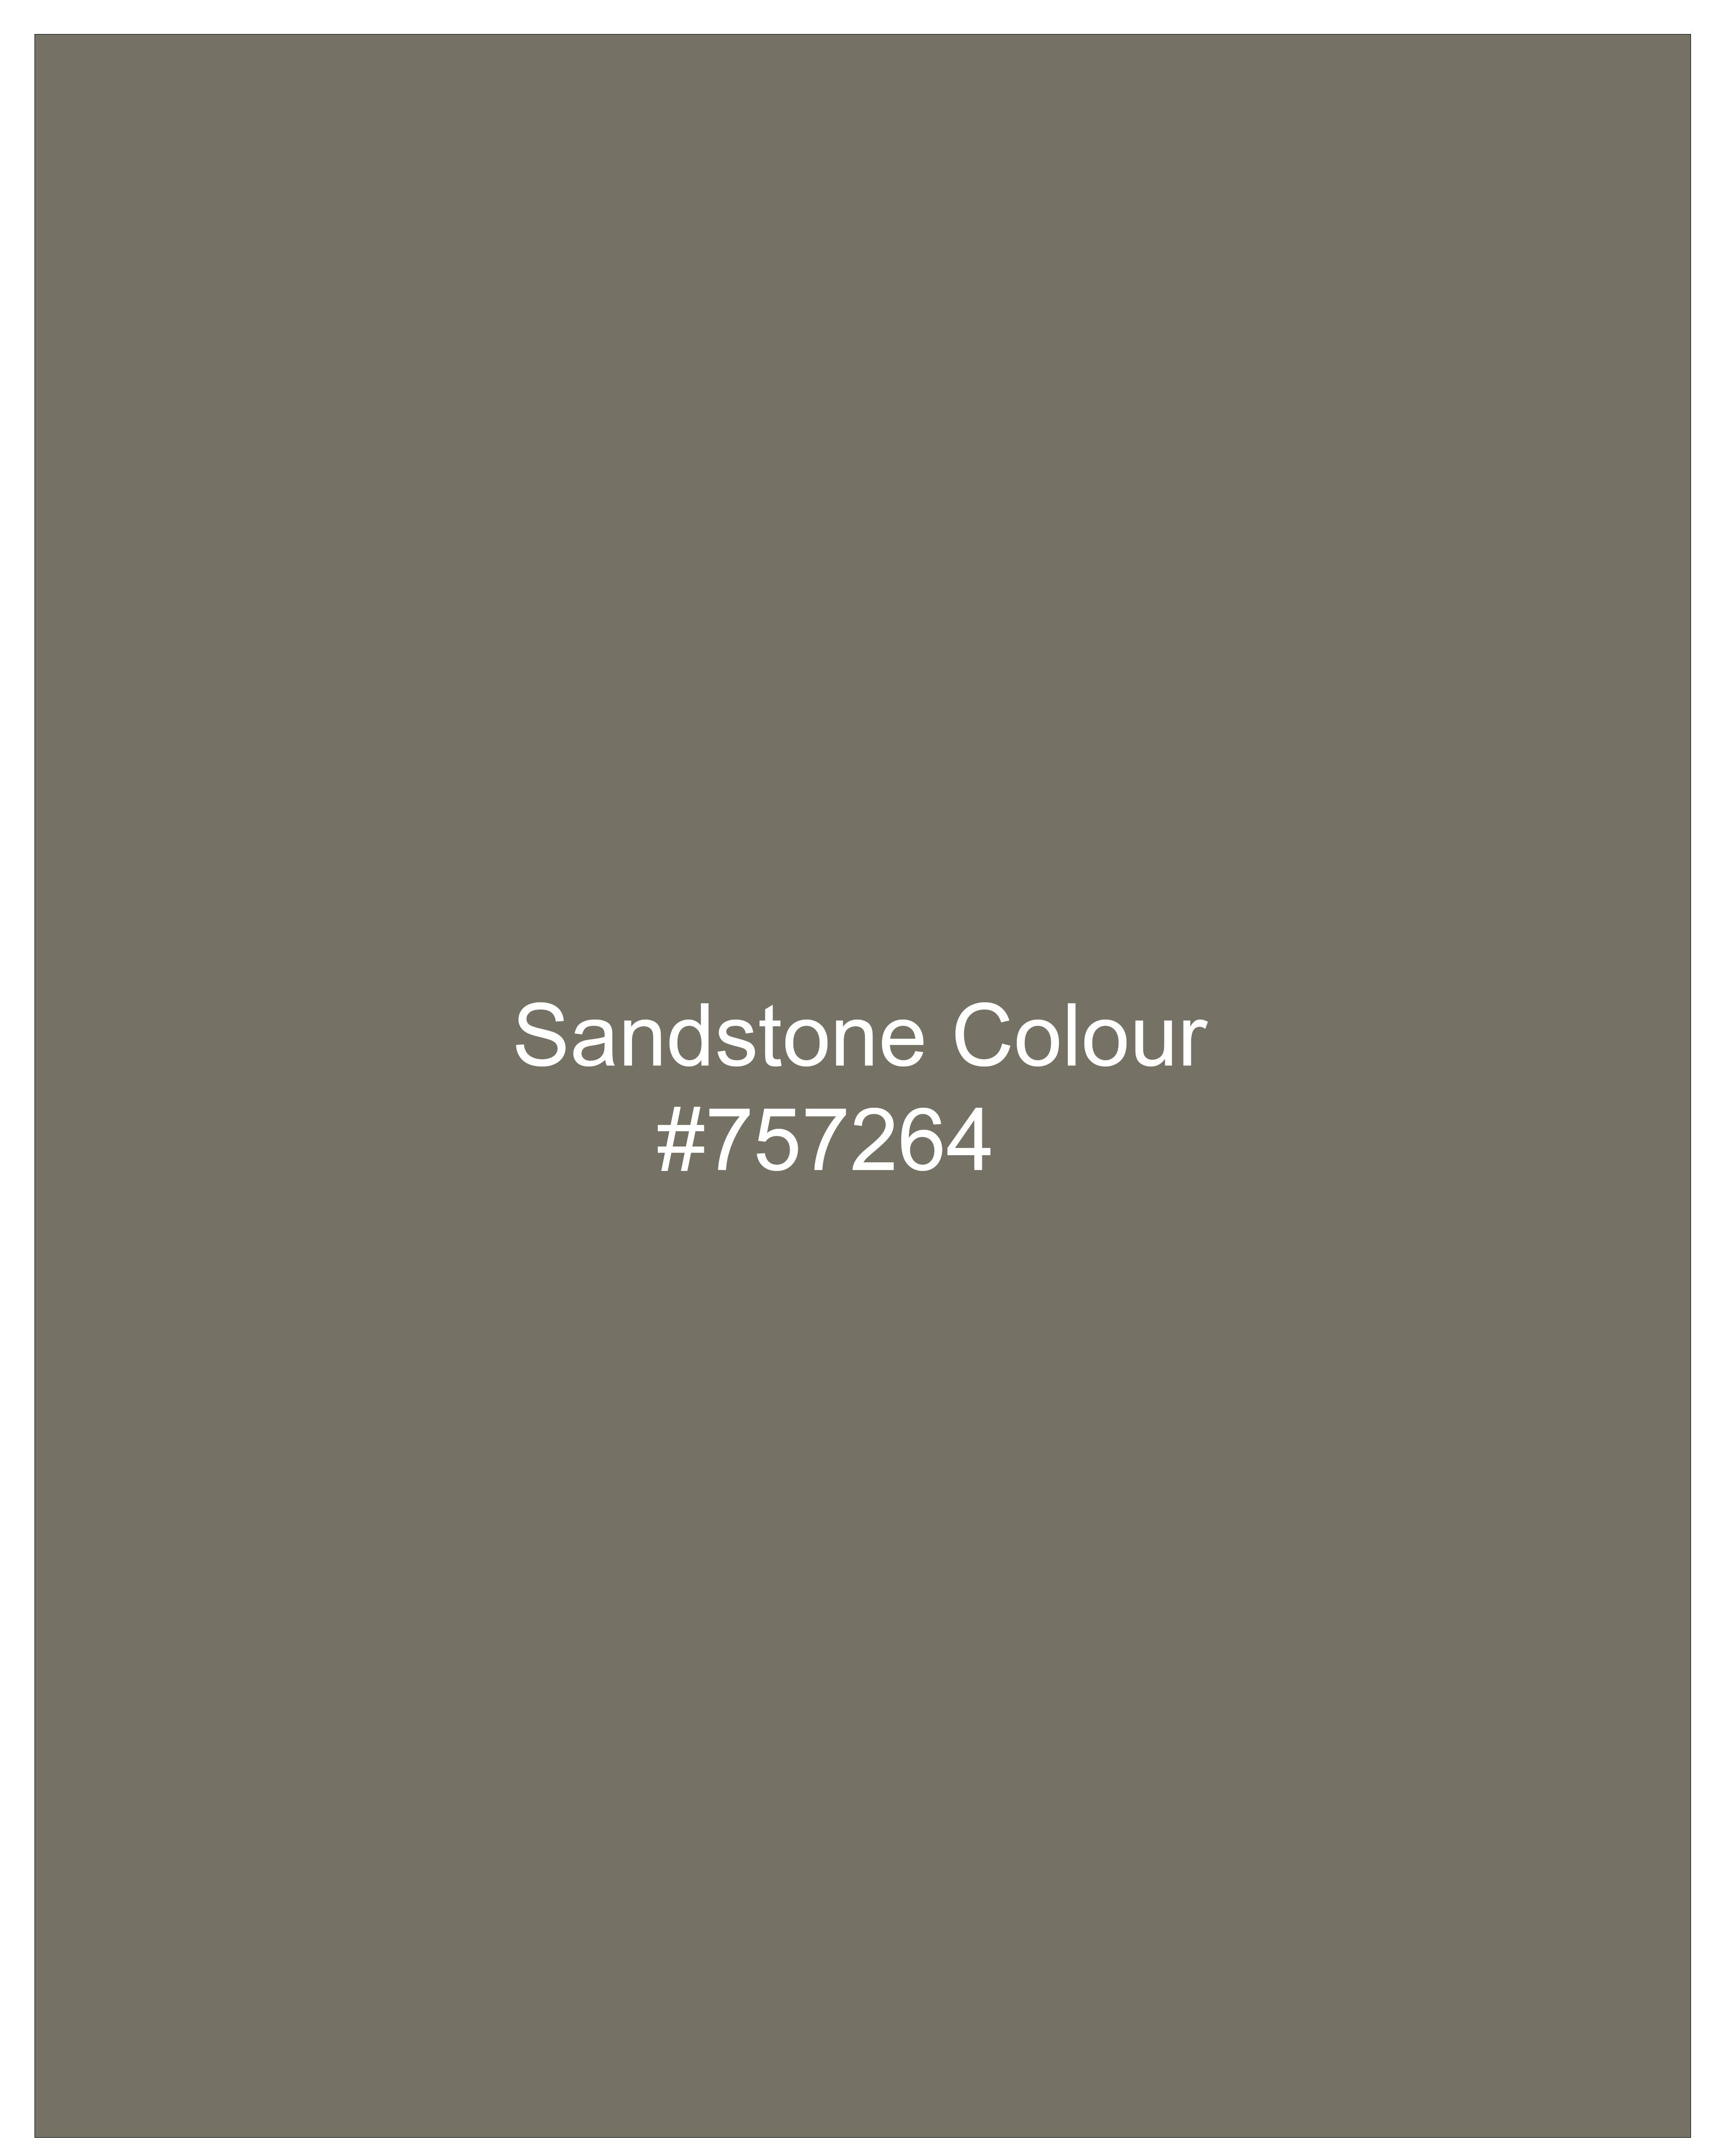 Sandstone Brown Pants T2503-28, T2503-30, T2503-32, T2503-34, T2503-36, T2503-38, T2503-40, T2503-42, T2503-44